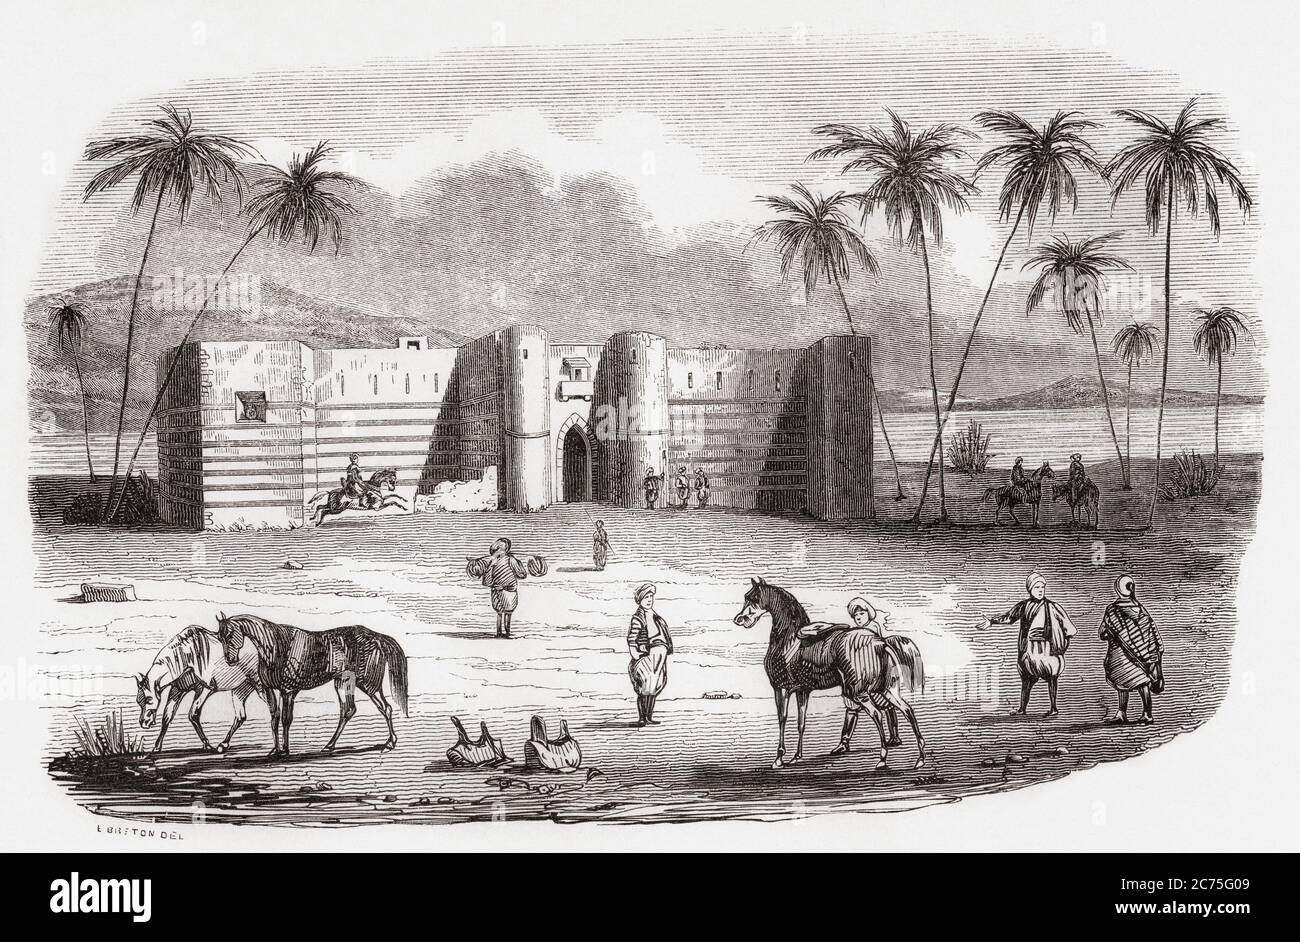 Die Burg Aqaba, die Burg Mamluk oder die Festung Aqaba, Aqaba, Jordanien. Aus Monuments de Tous les Peuples, veröffentlicht 1843. Stockfoto